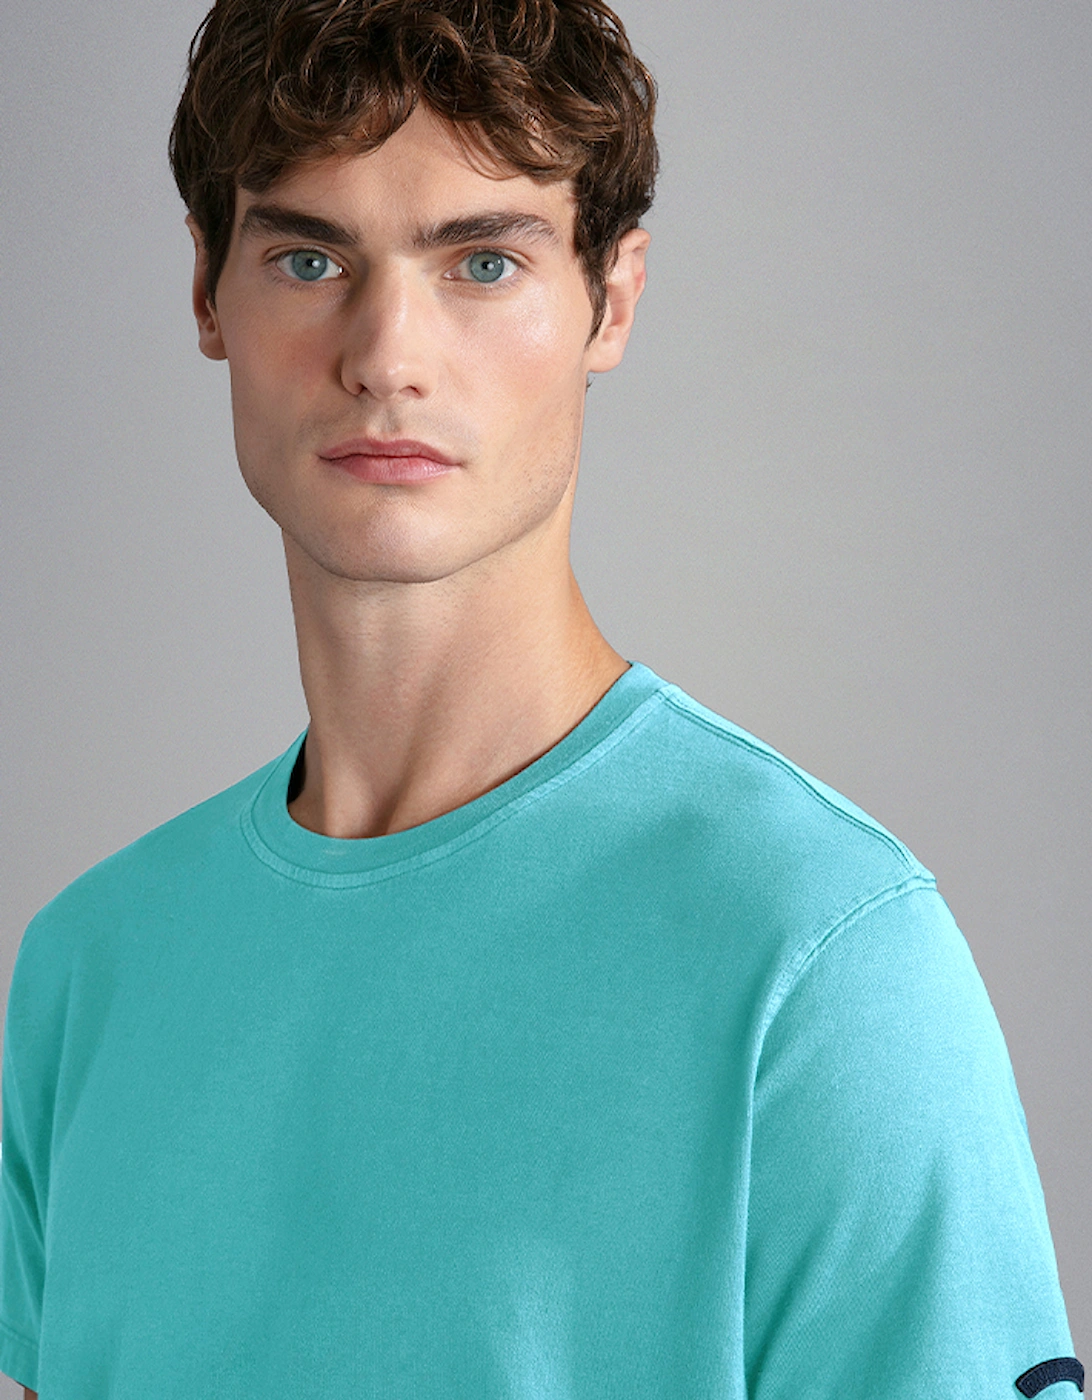 Men's Garment-Dyed Cotton Jersey T-Shirt